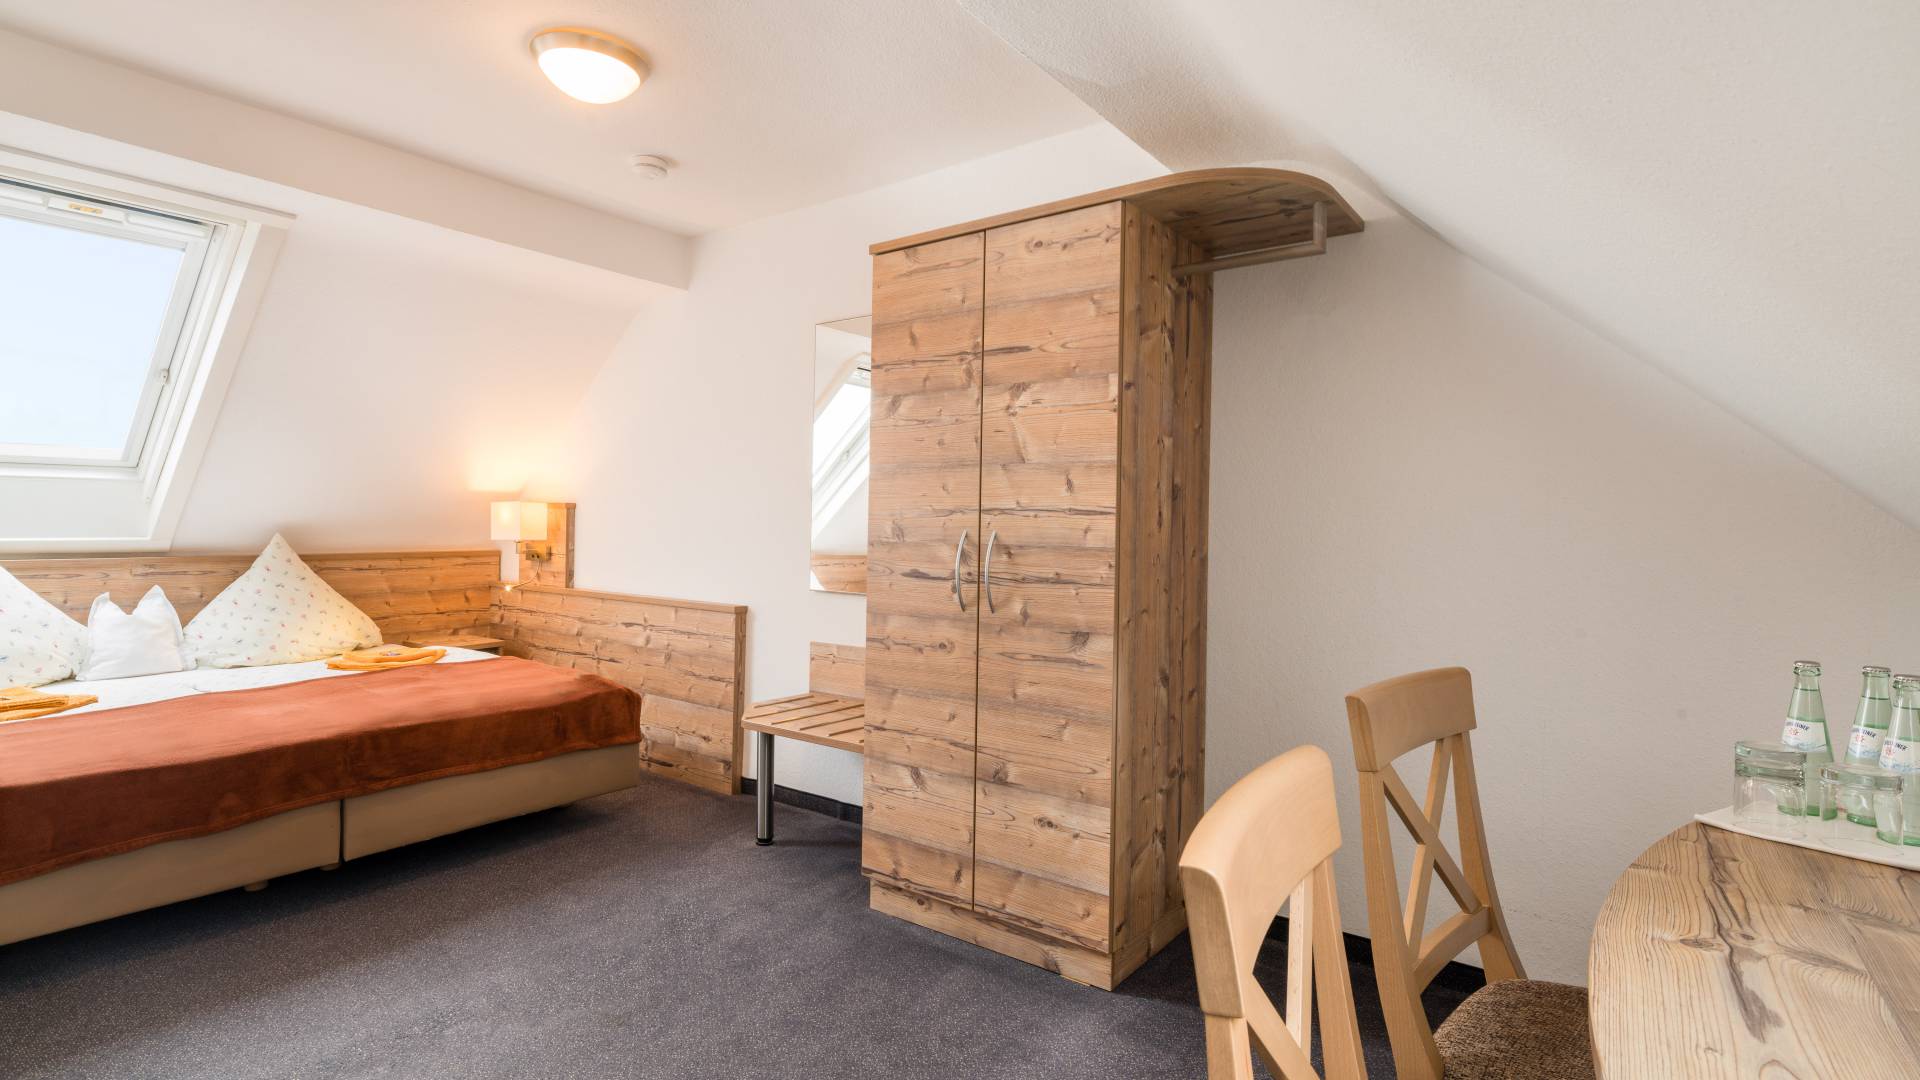 Zimmer mit Dachschräge, Bett, Schreibtisch und Schrank,Hotel Nussbaum, Ratingen-Hösel